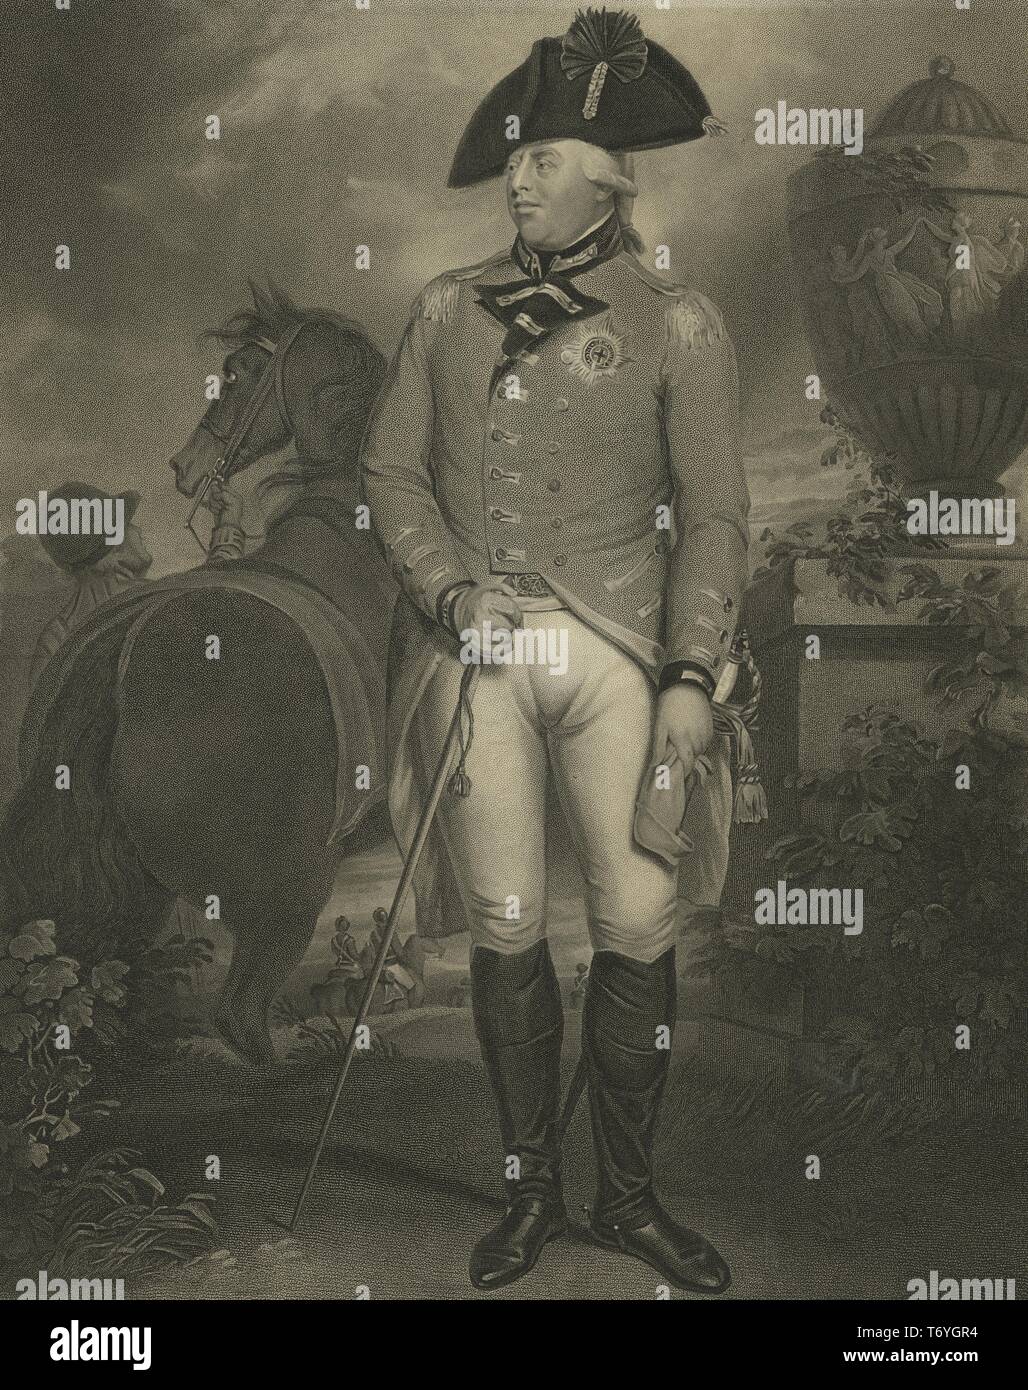 Retrato grabado de George III del Reino Unido, el Rey del Reino Unido de Gran Bretaña e Irlanda, 1800. Desde la Biblioteca Pública de Nueva York. () Foto de stock